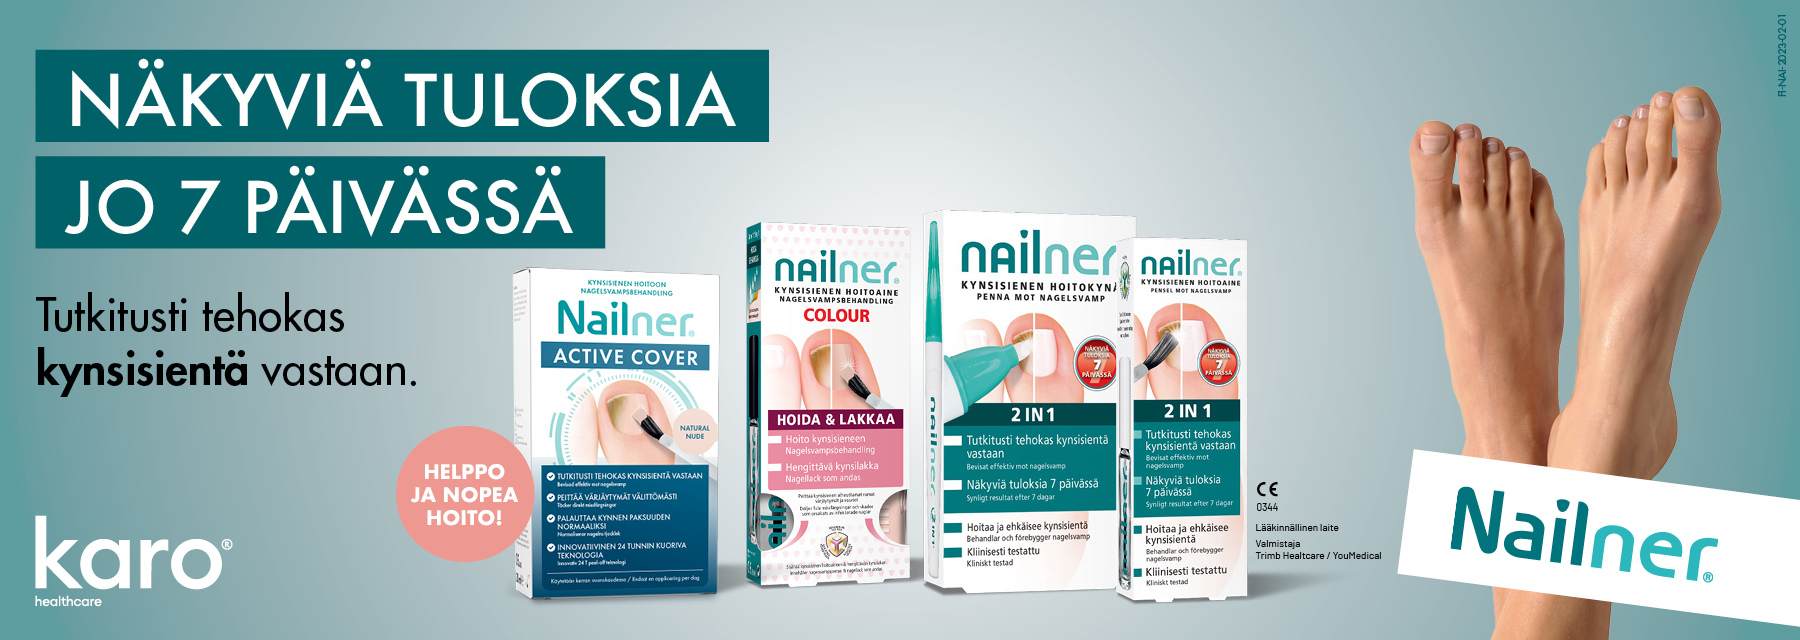 Nailner Tuotteet - Rotuaarin verkkoapteekki